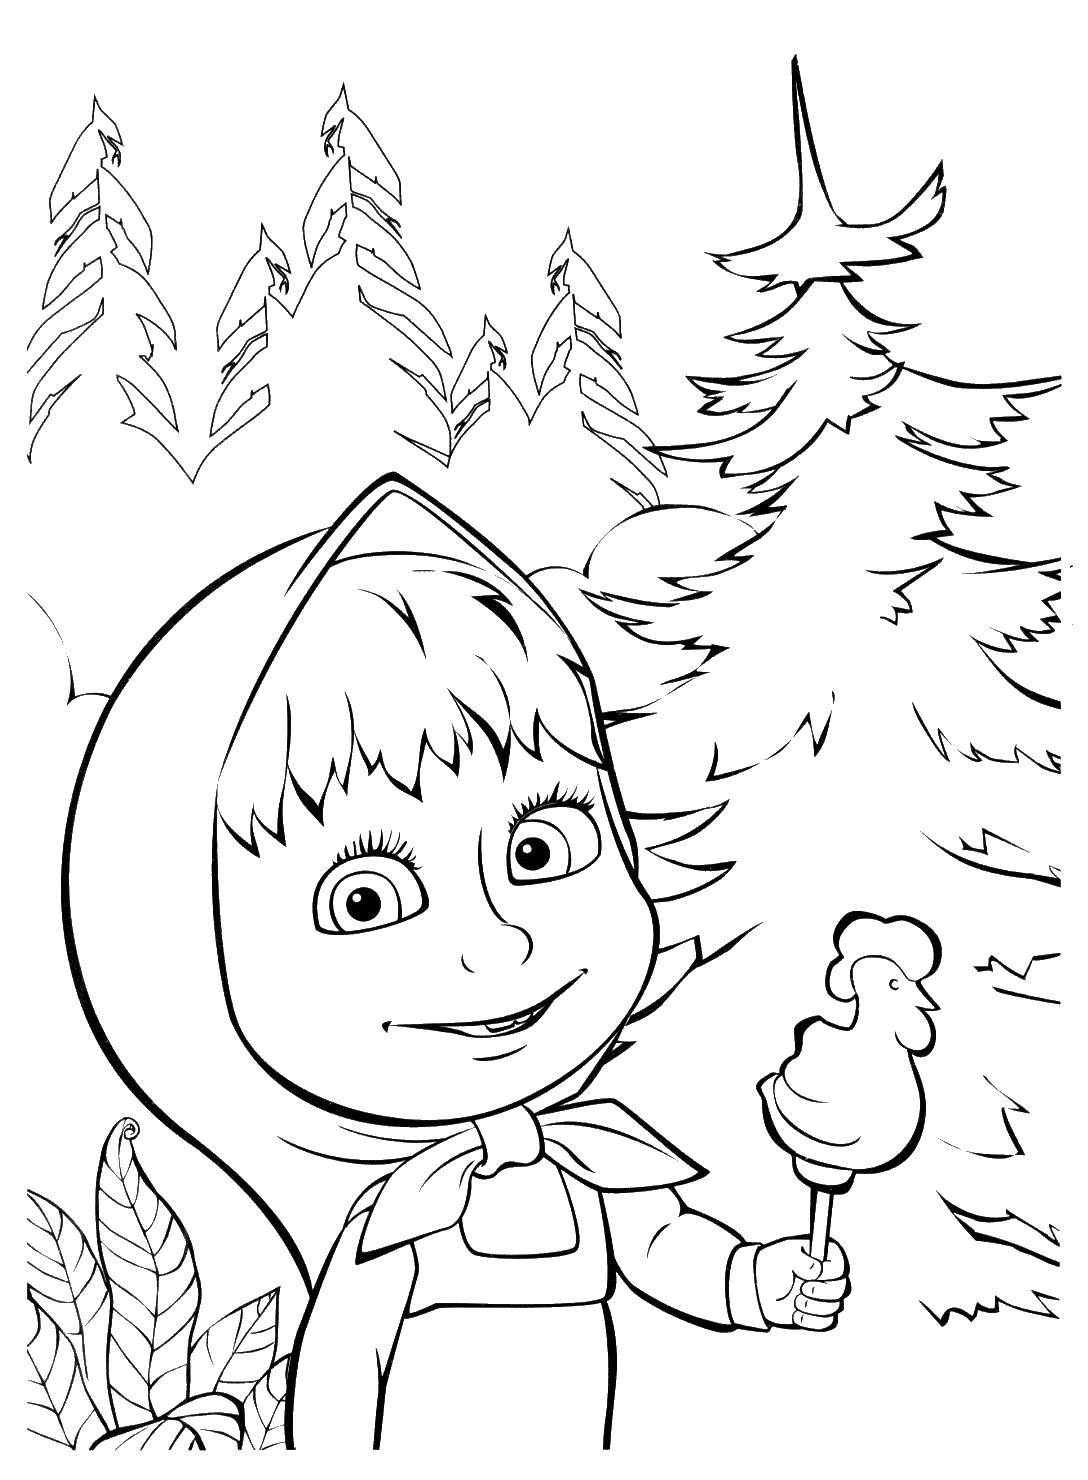 Раскраски для детей про озорную Машу из мультфильма Маша и медведь  Маша и петушок